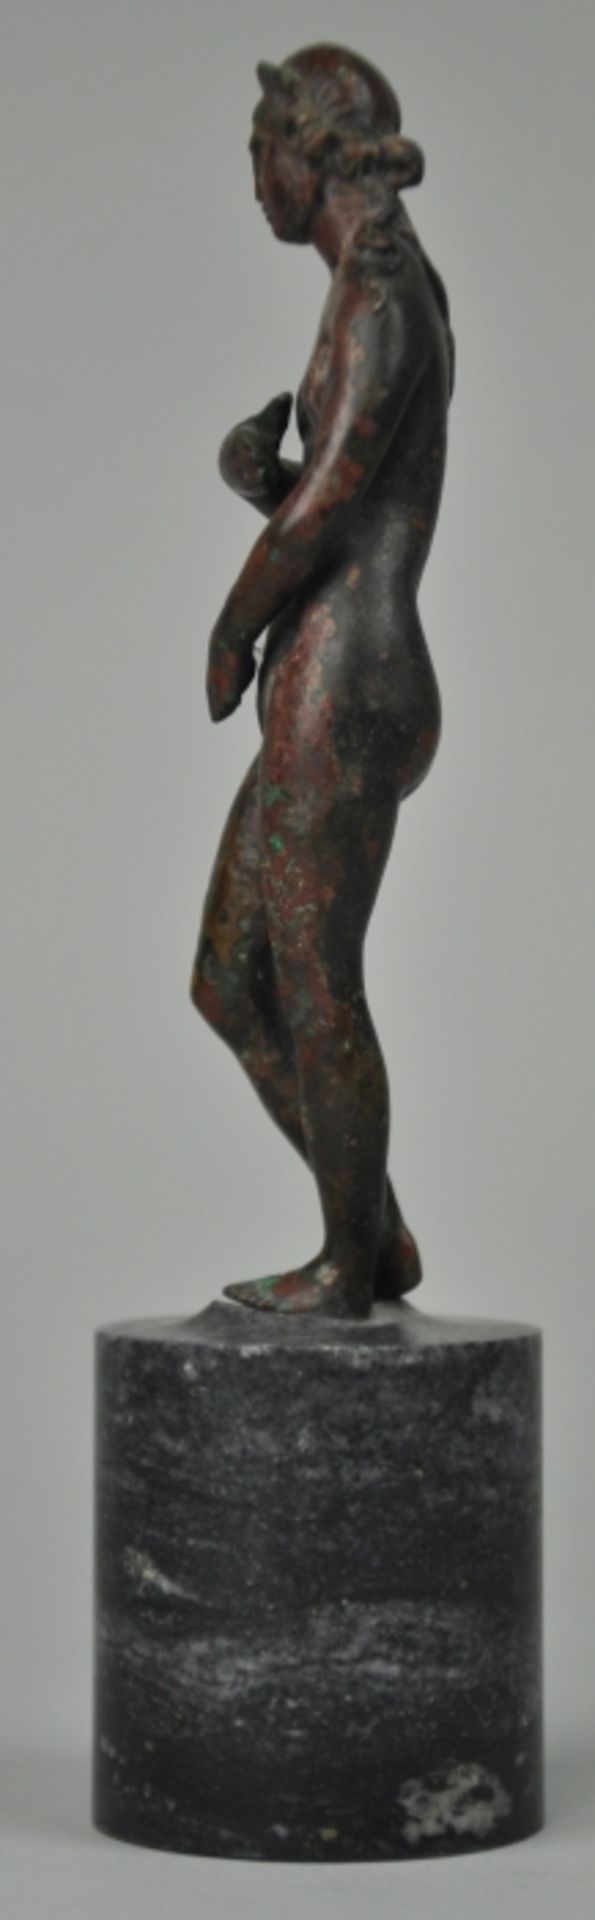 VENUS im Stile der kapitolinischen Venus, sich die Scham bedeckend, mit langem lockigen Haar, - Image 4 of 6